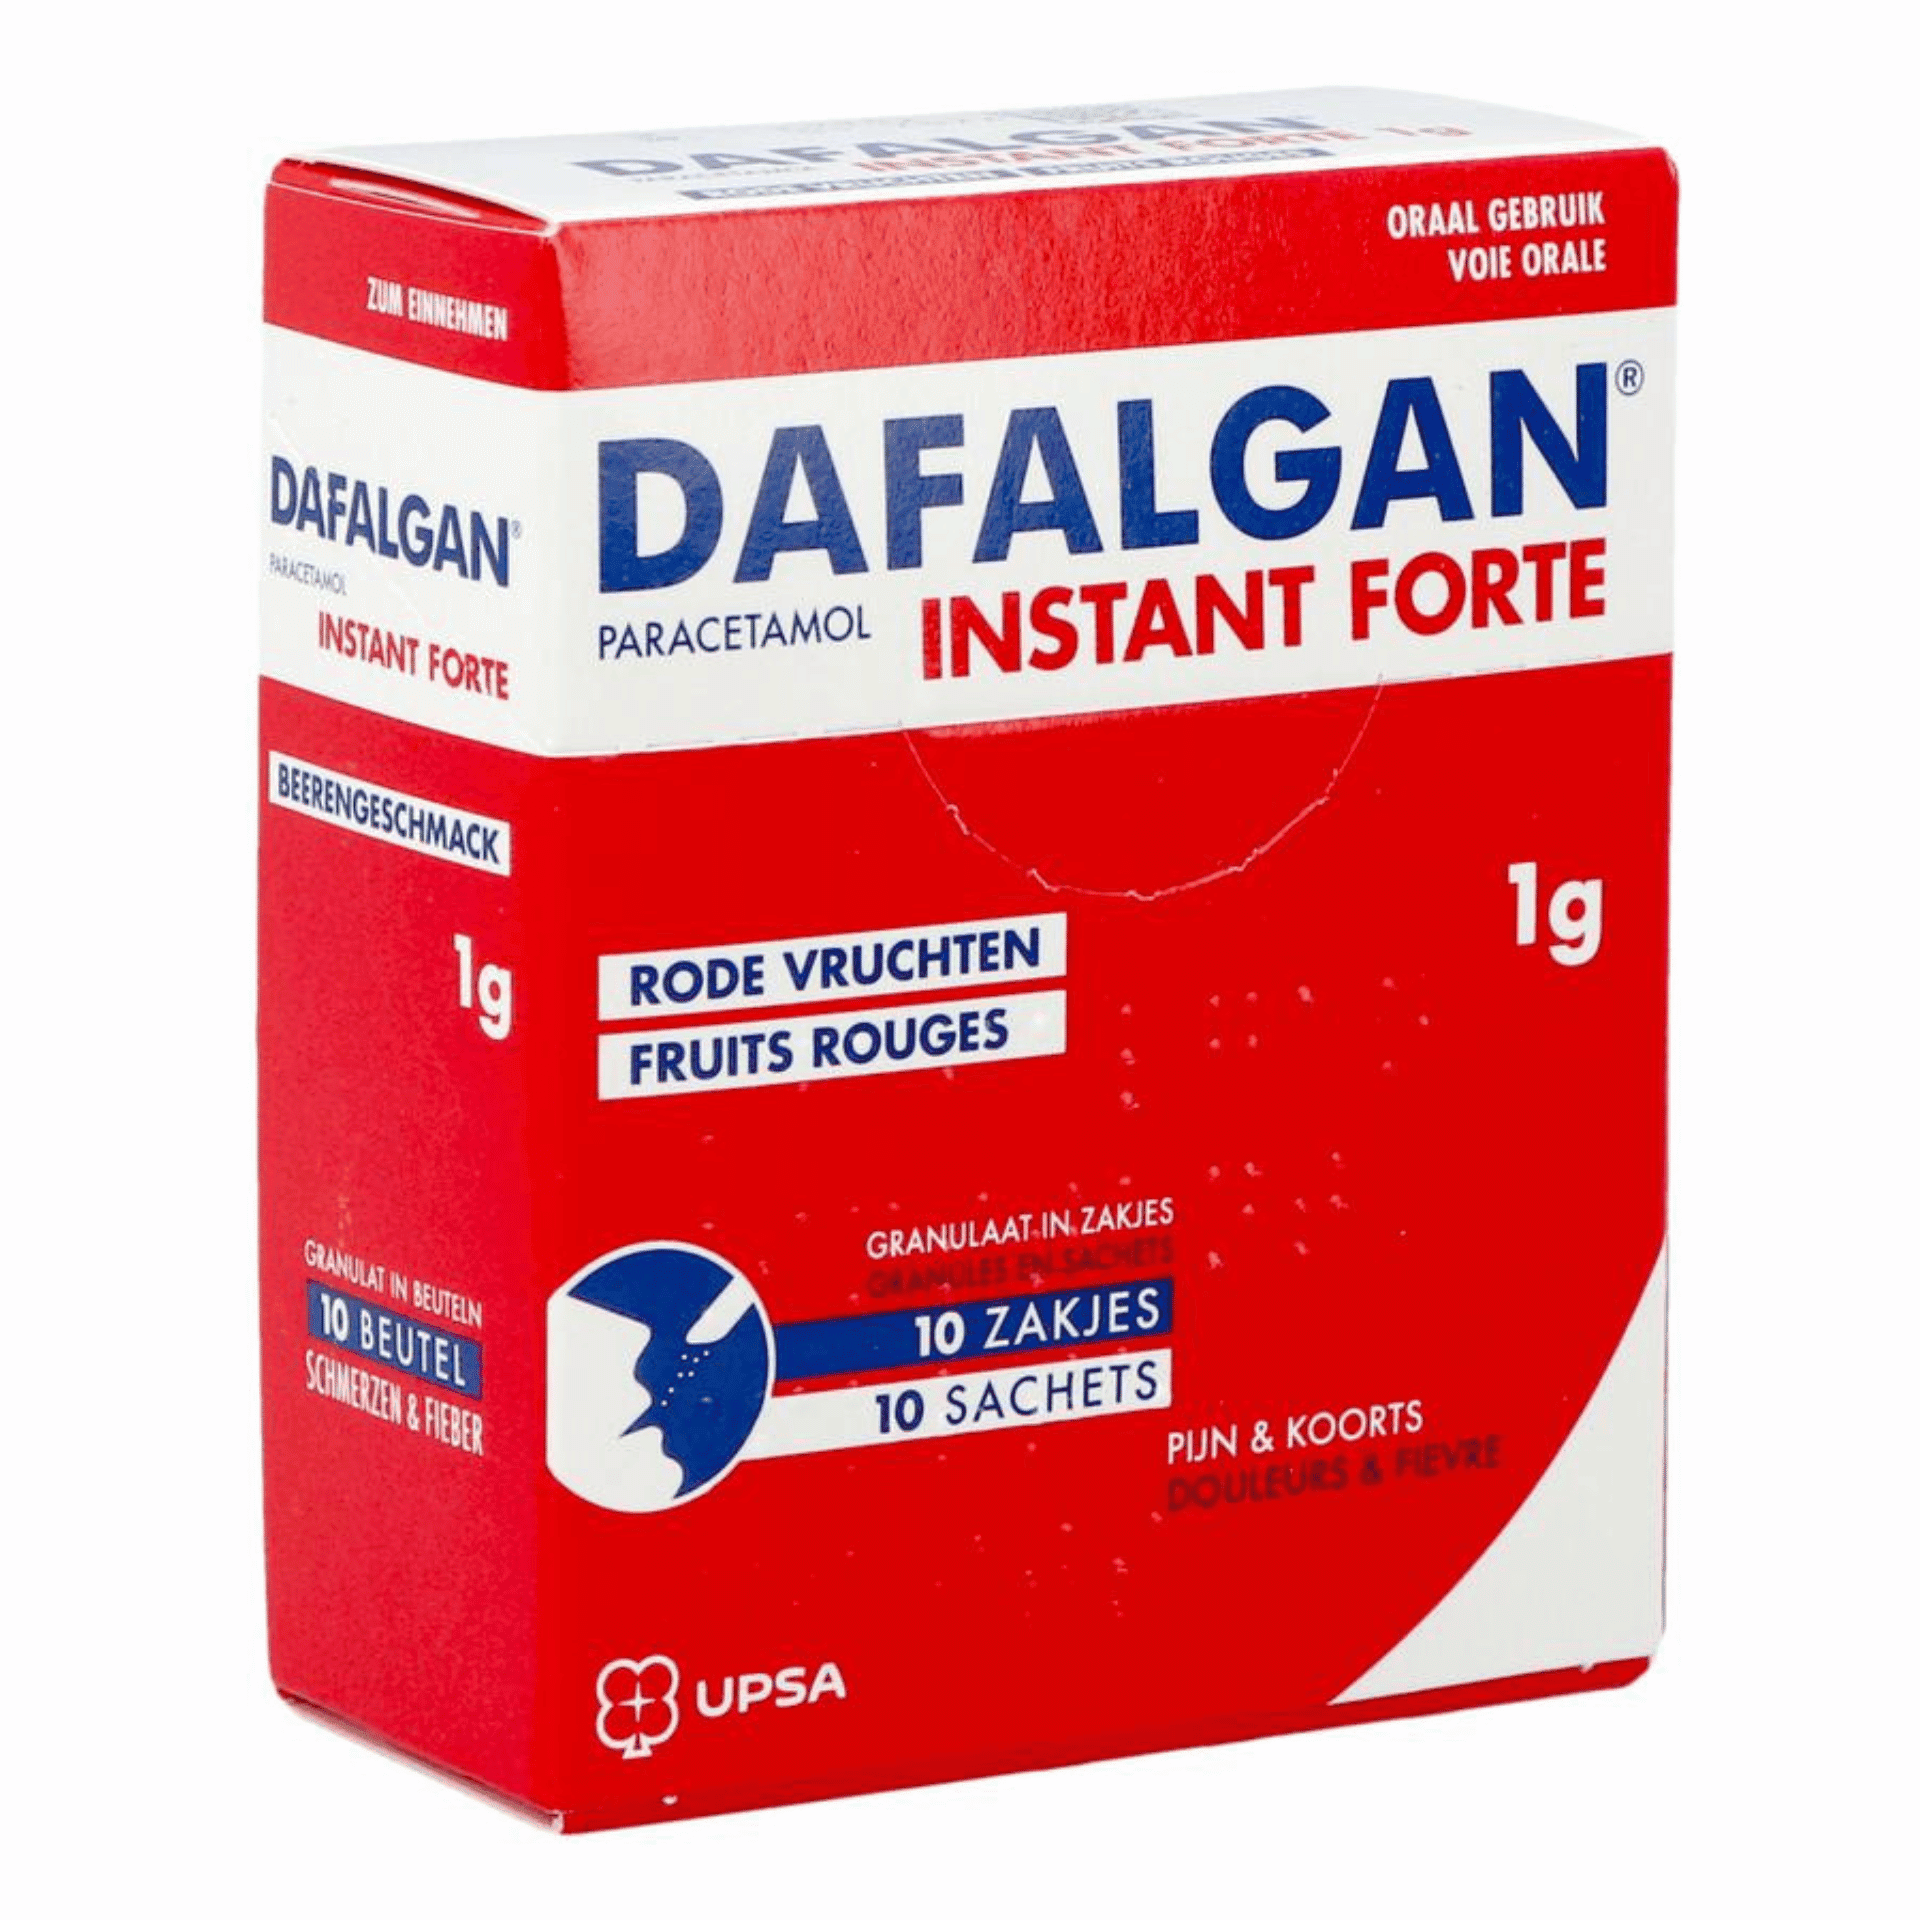 Dafalgan Instant Forte 1 g Rode Vruchten